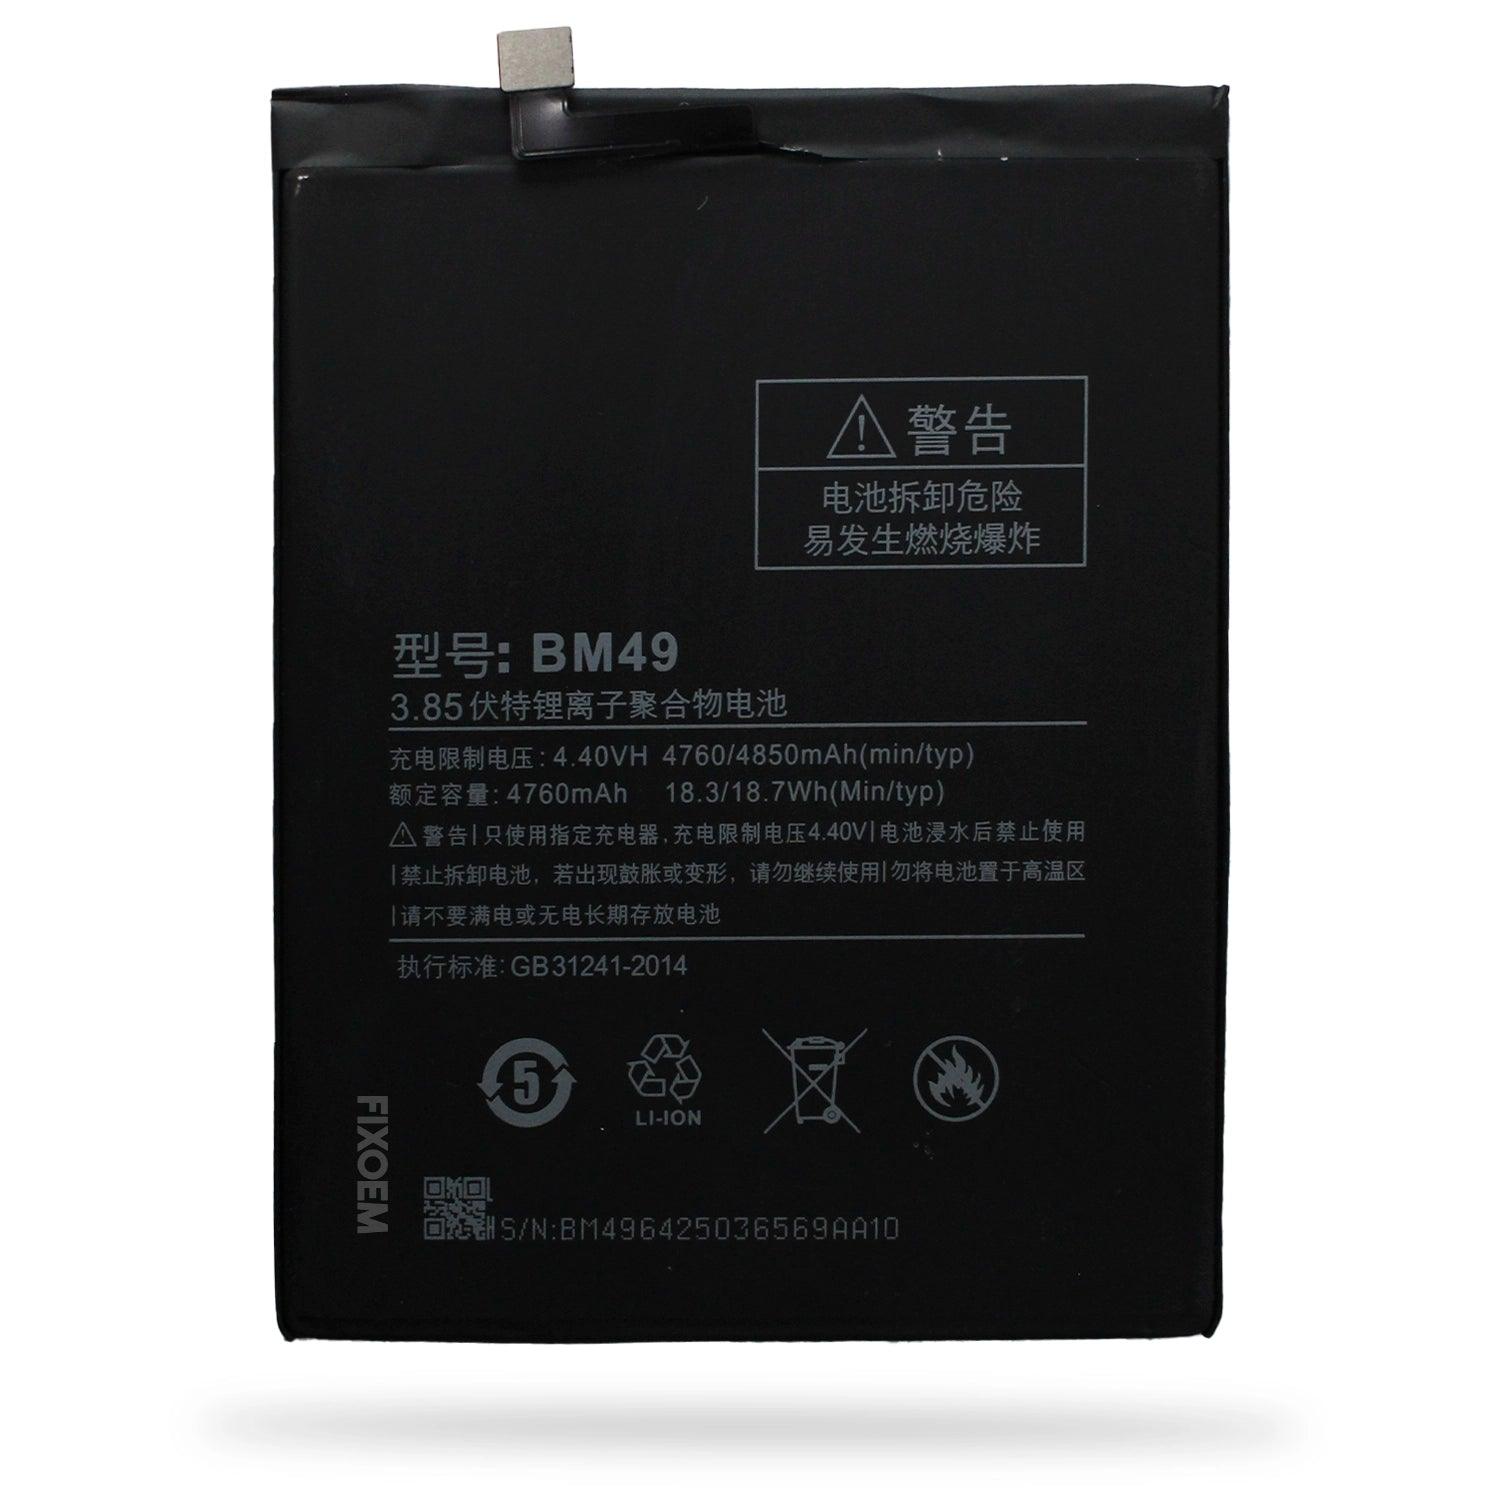 Bateria Xiaomi Mi Max 2016001 2016002 2016007 Bm49 a solo $ 180.00 Refaccion y puestos celulares, refurbish y microelectronica.- FixOEM